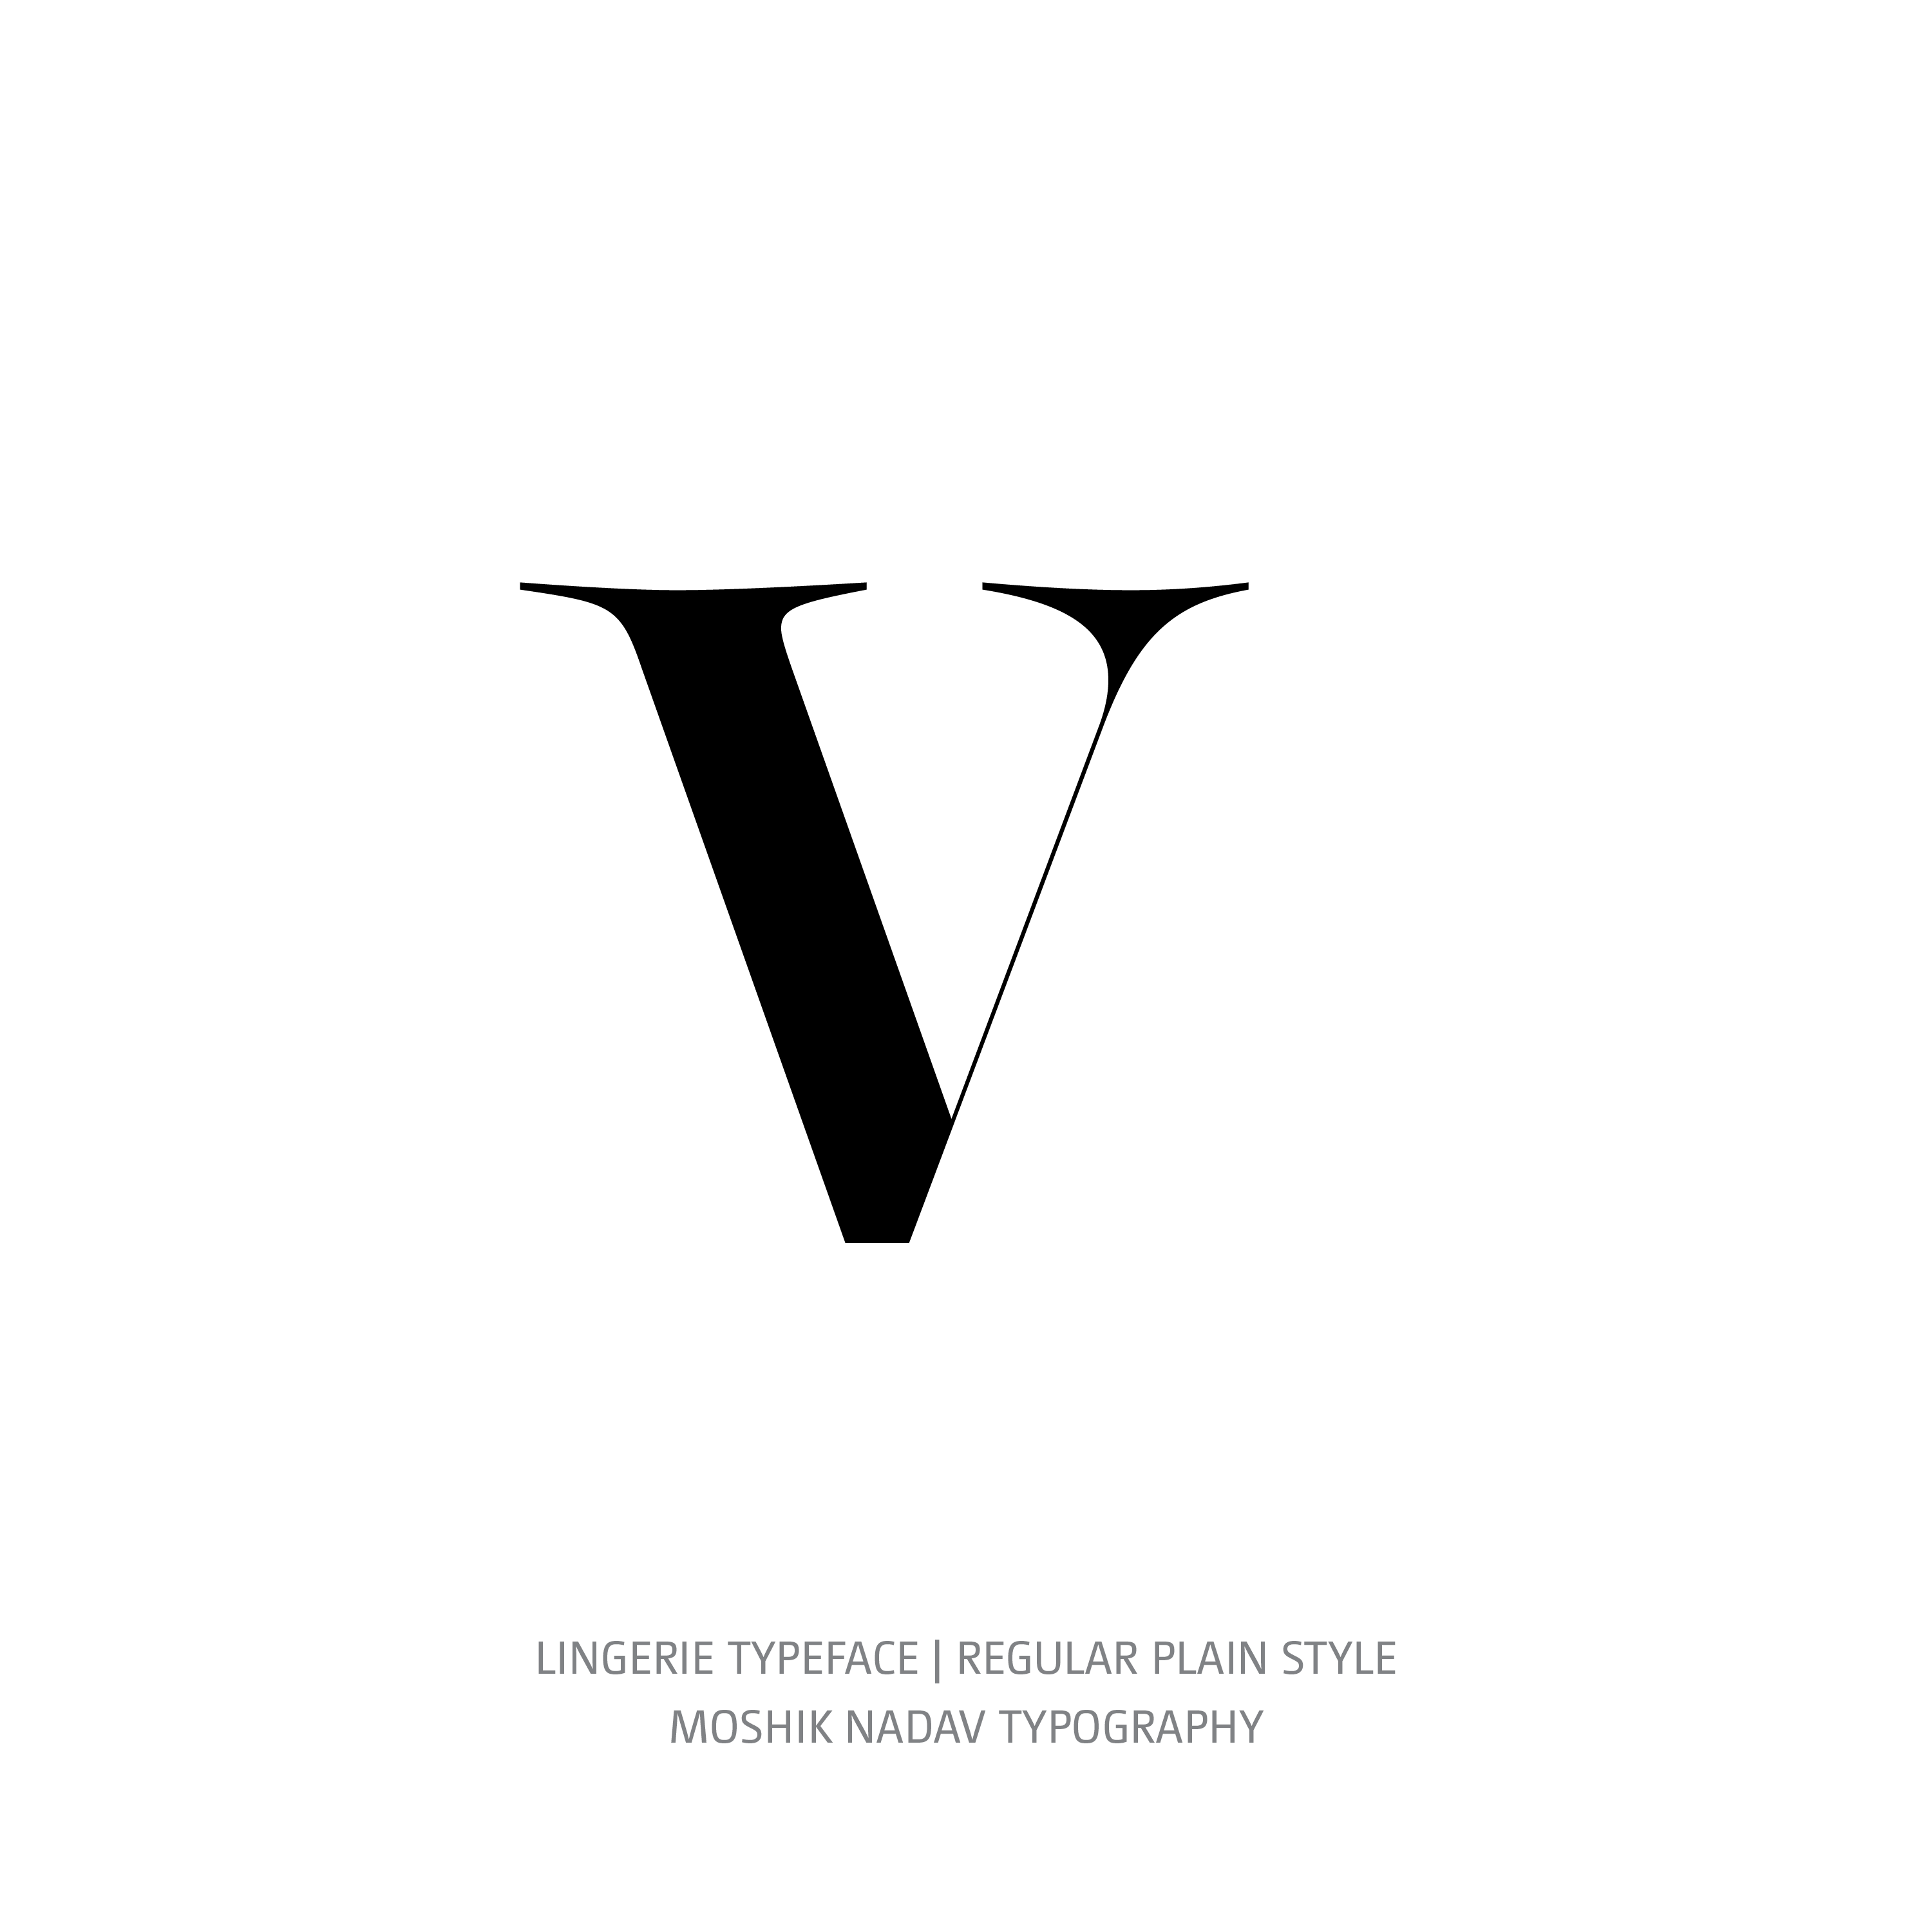 Lingerie Typeface Regular Plain v